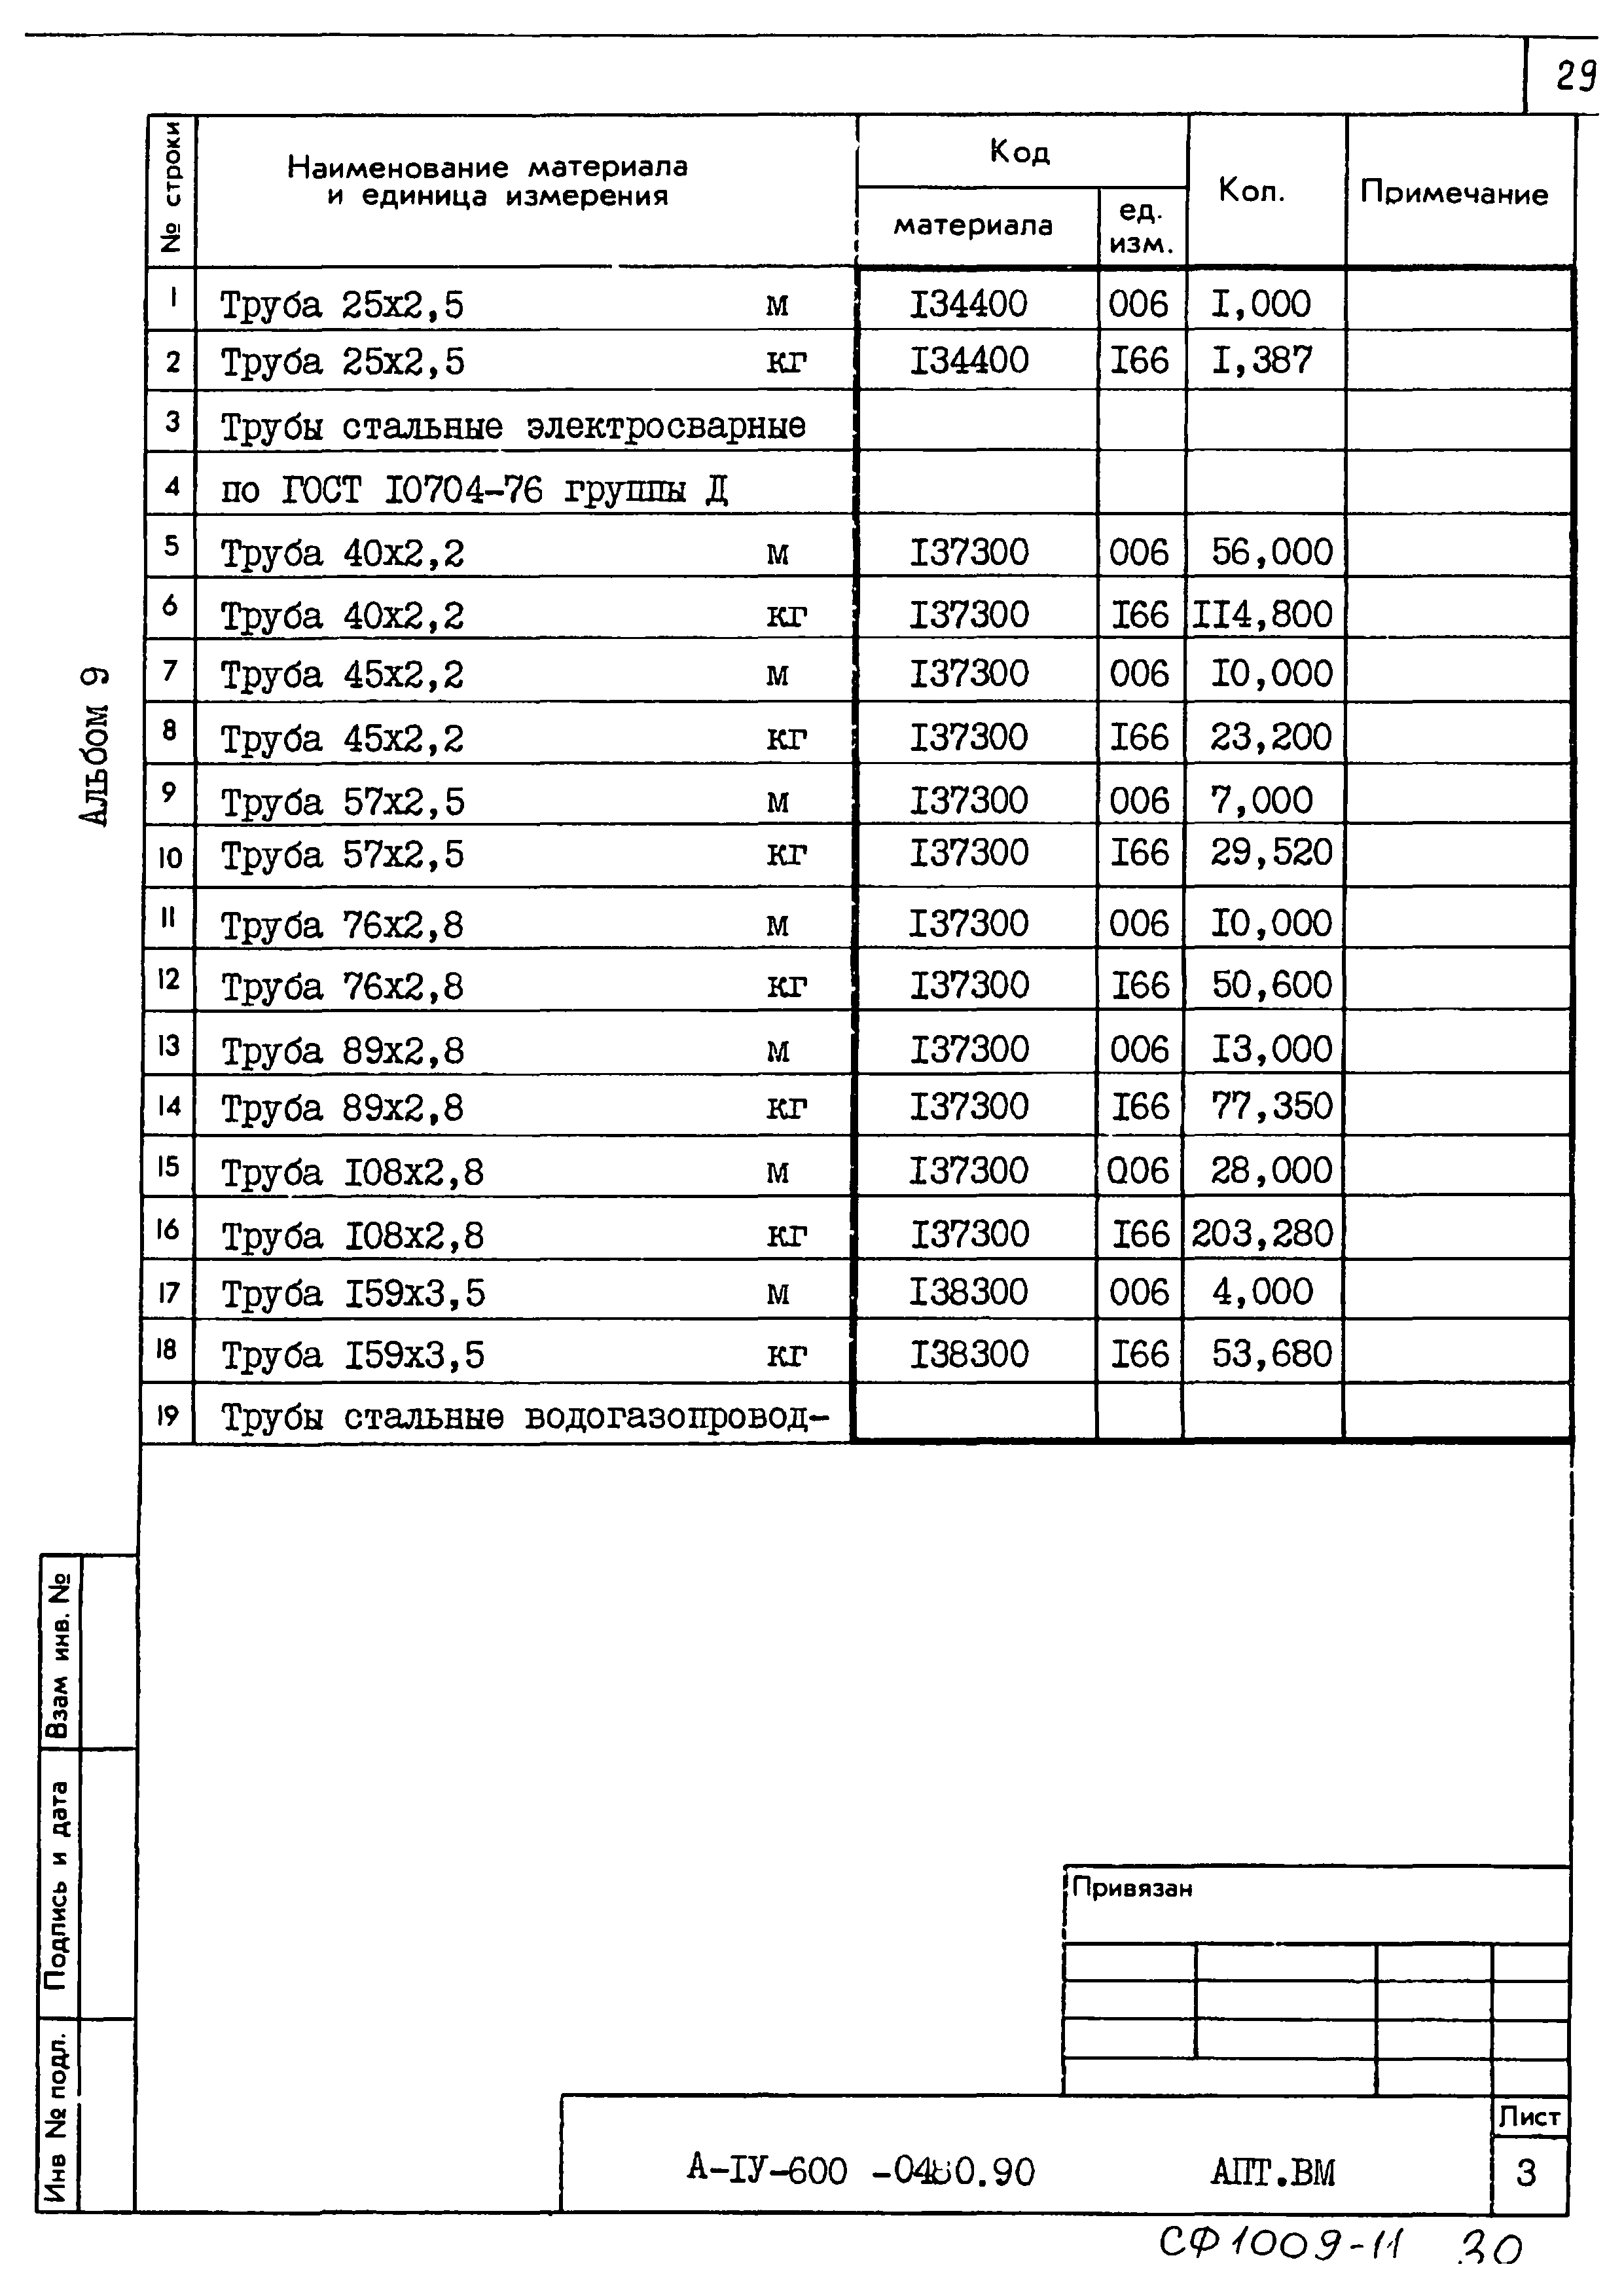 Типовые проектные решения А-IV-600-0480.90